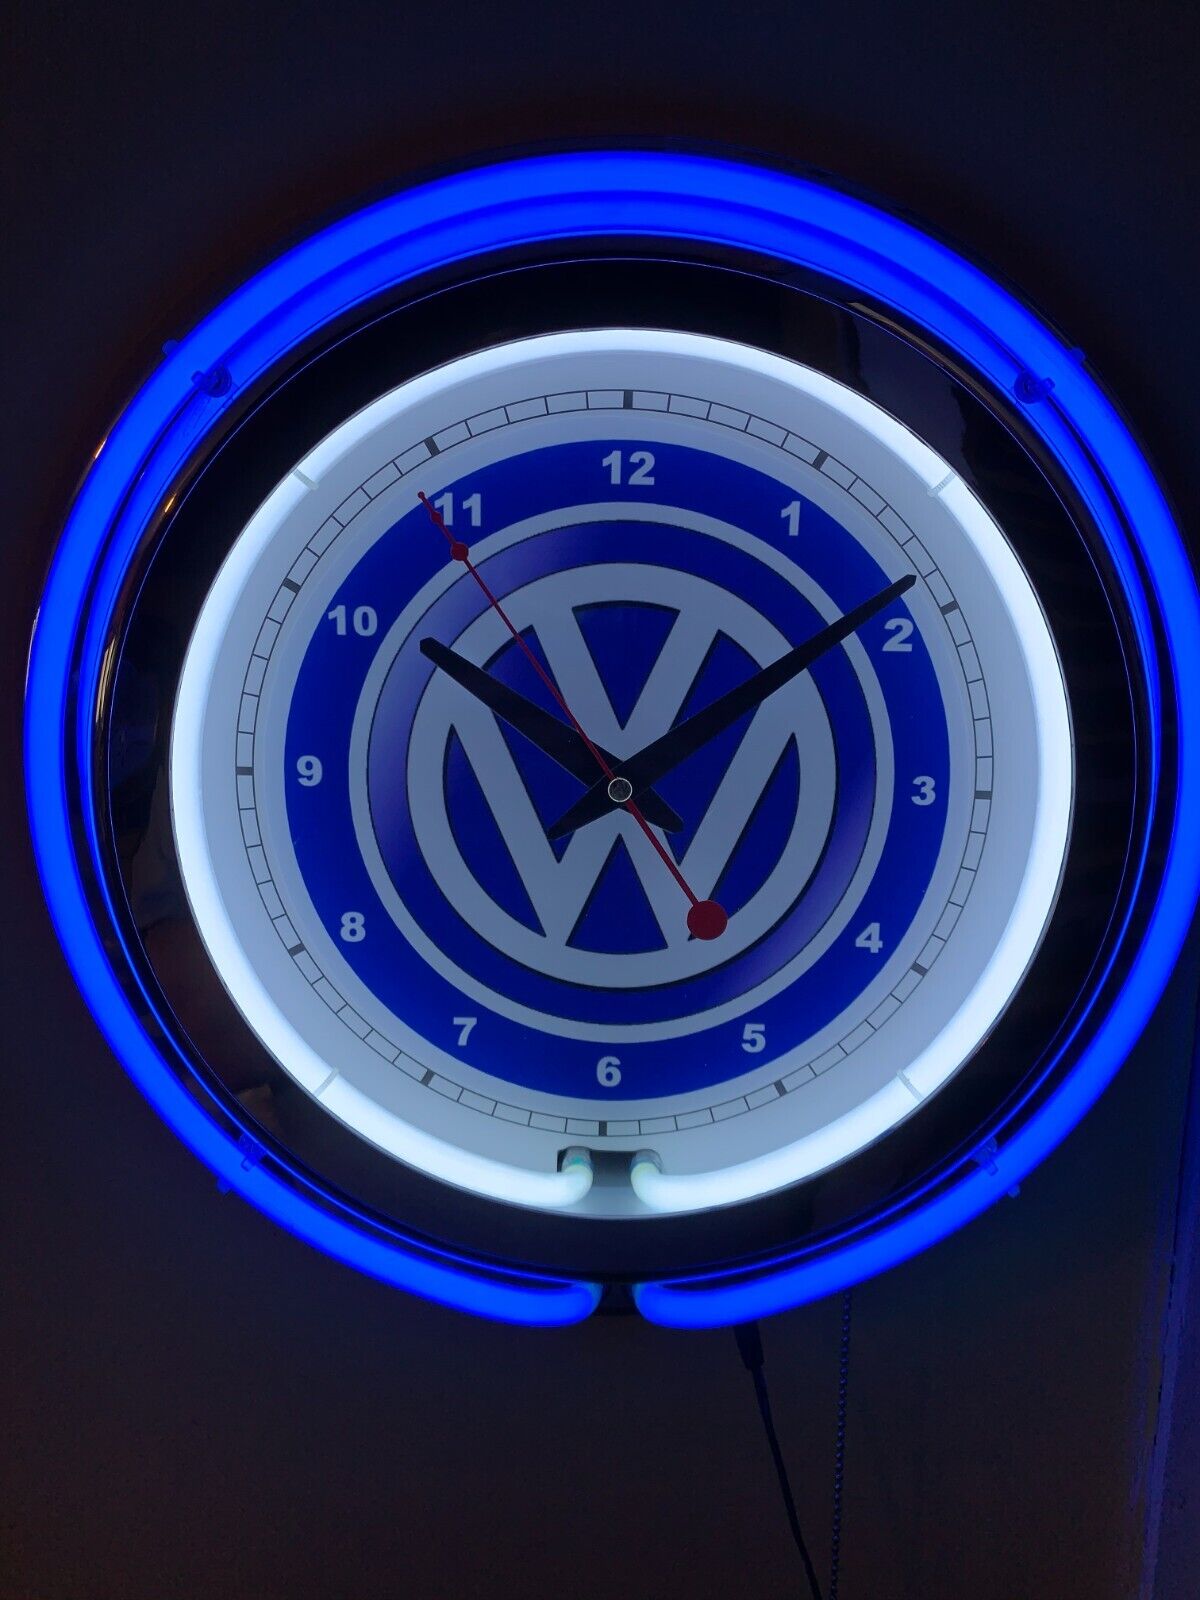 VW Volkswagen Motors Garage BLUE Man Cave Neon Wall Clock Advertising Sign